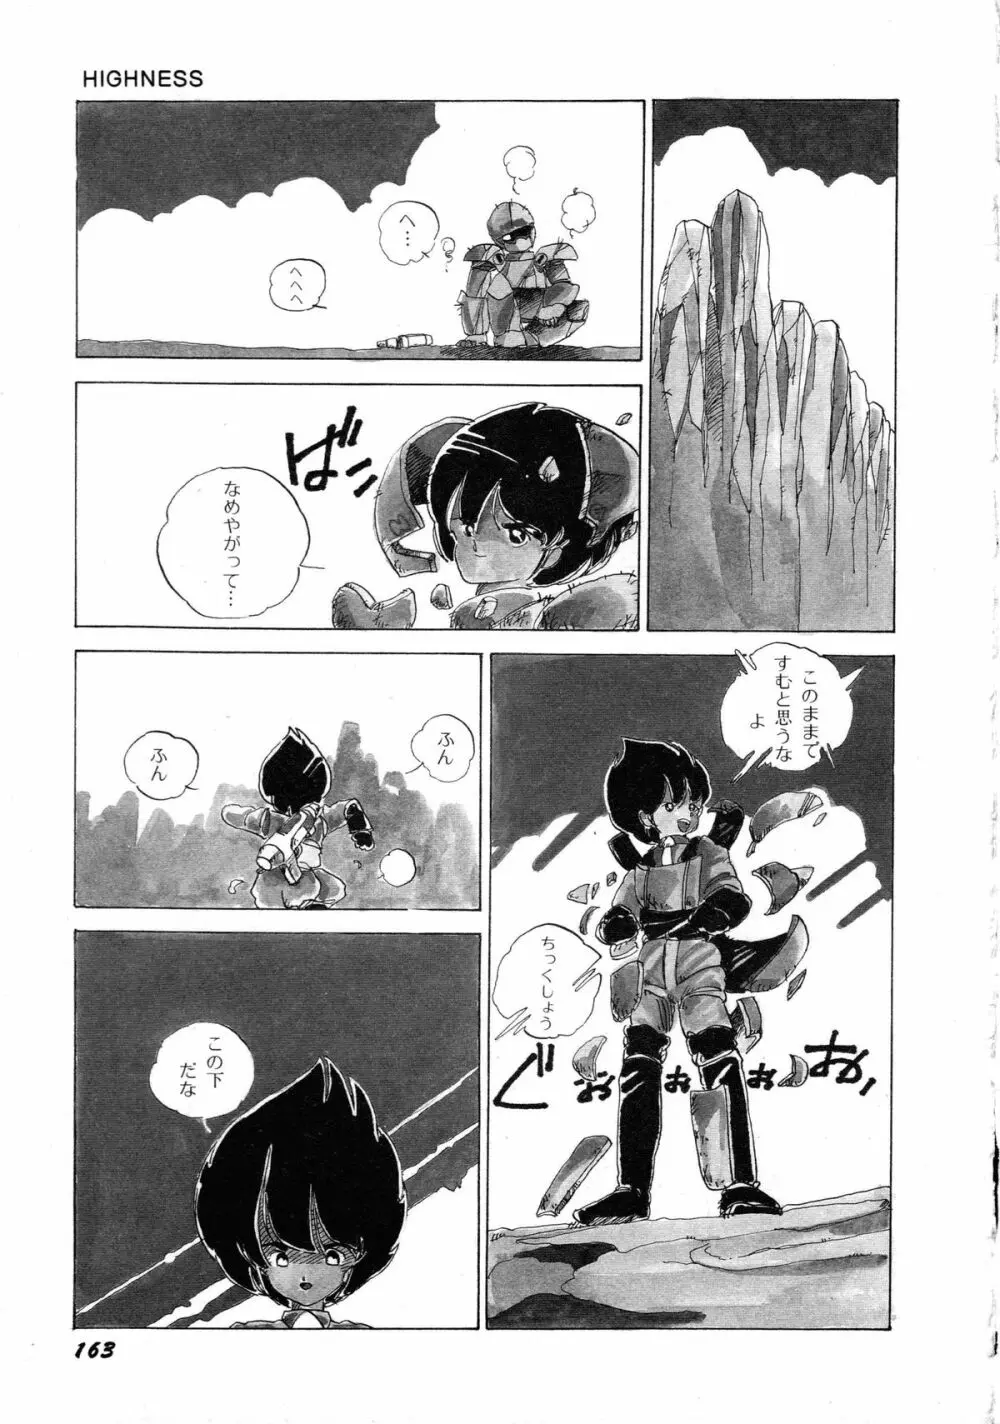 ロボット&美少女傑作選 レモン・ピープル1982-1986 167ページ